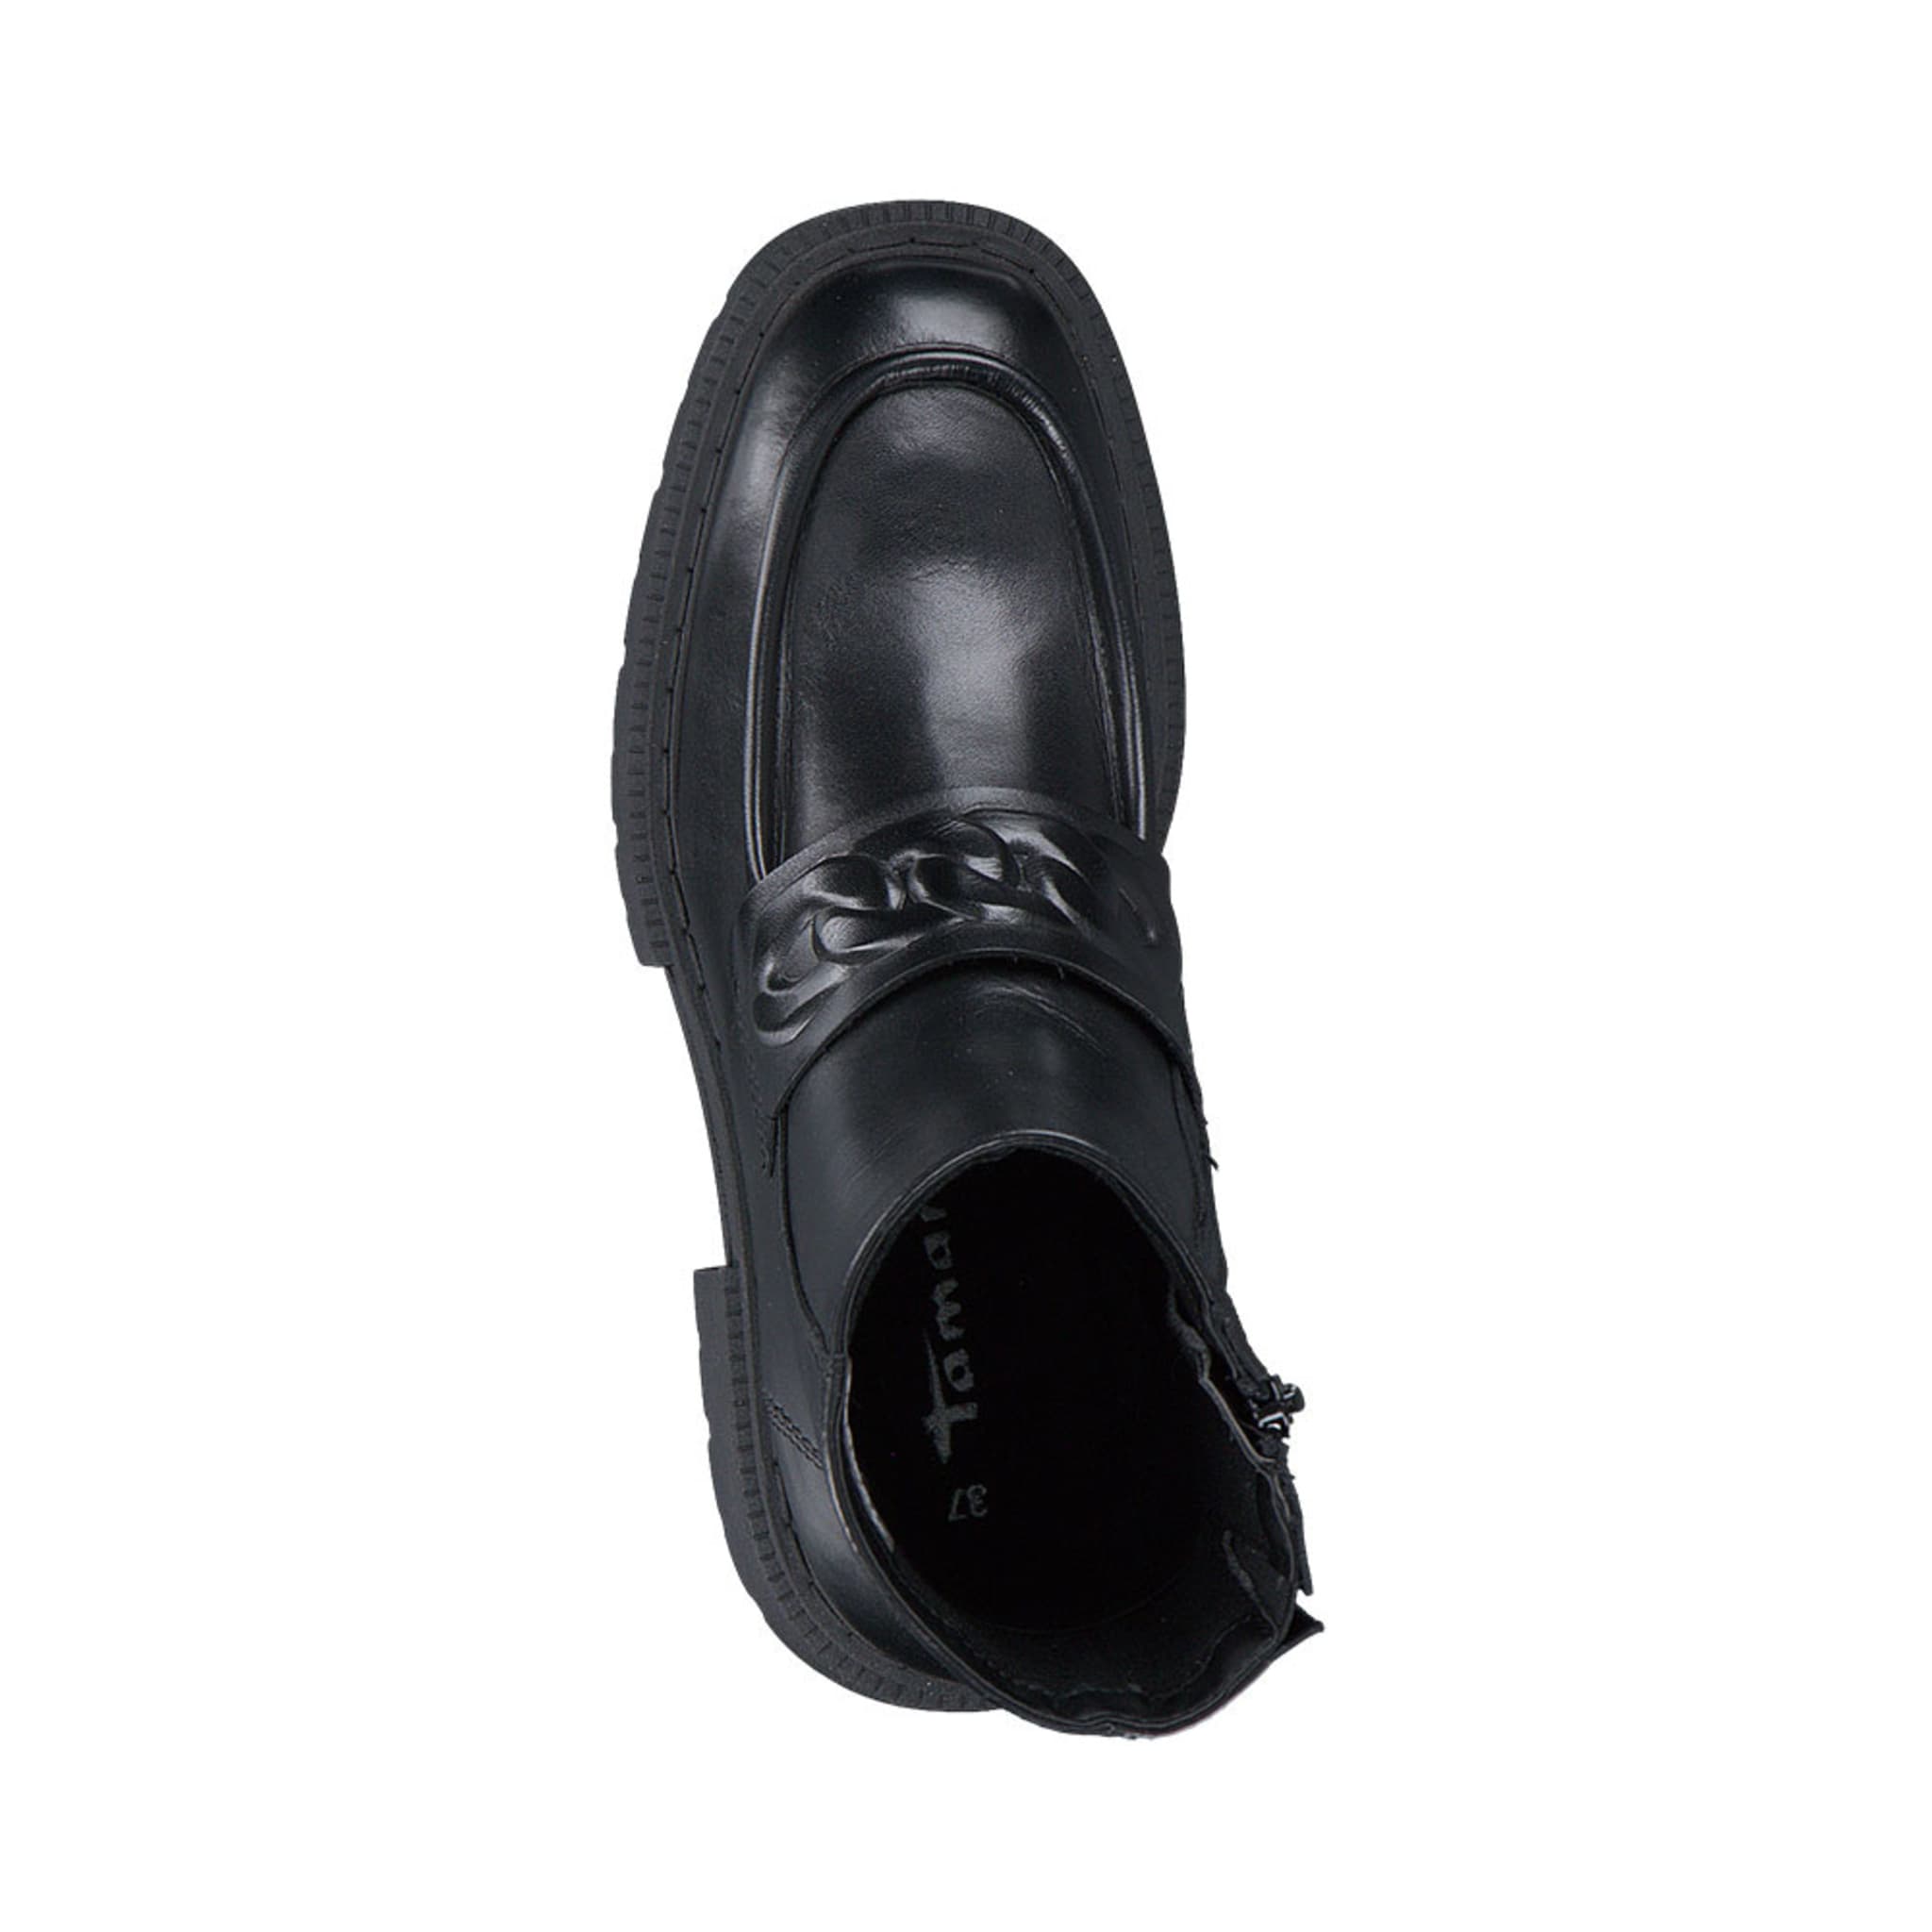 Loafer Boot 1-1-25463-29, Black